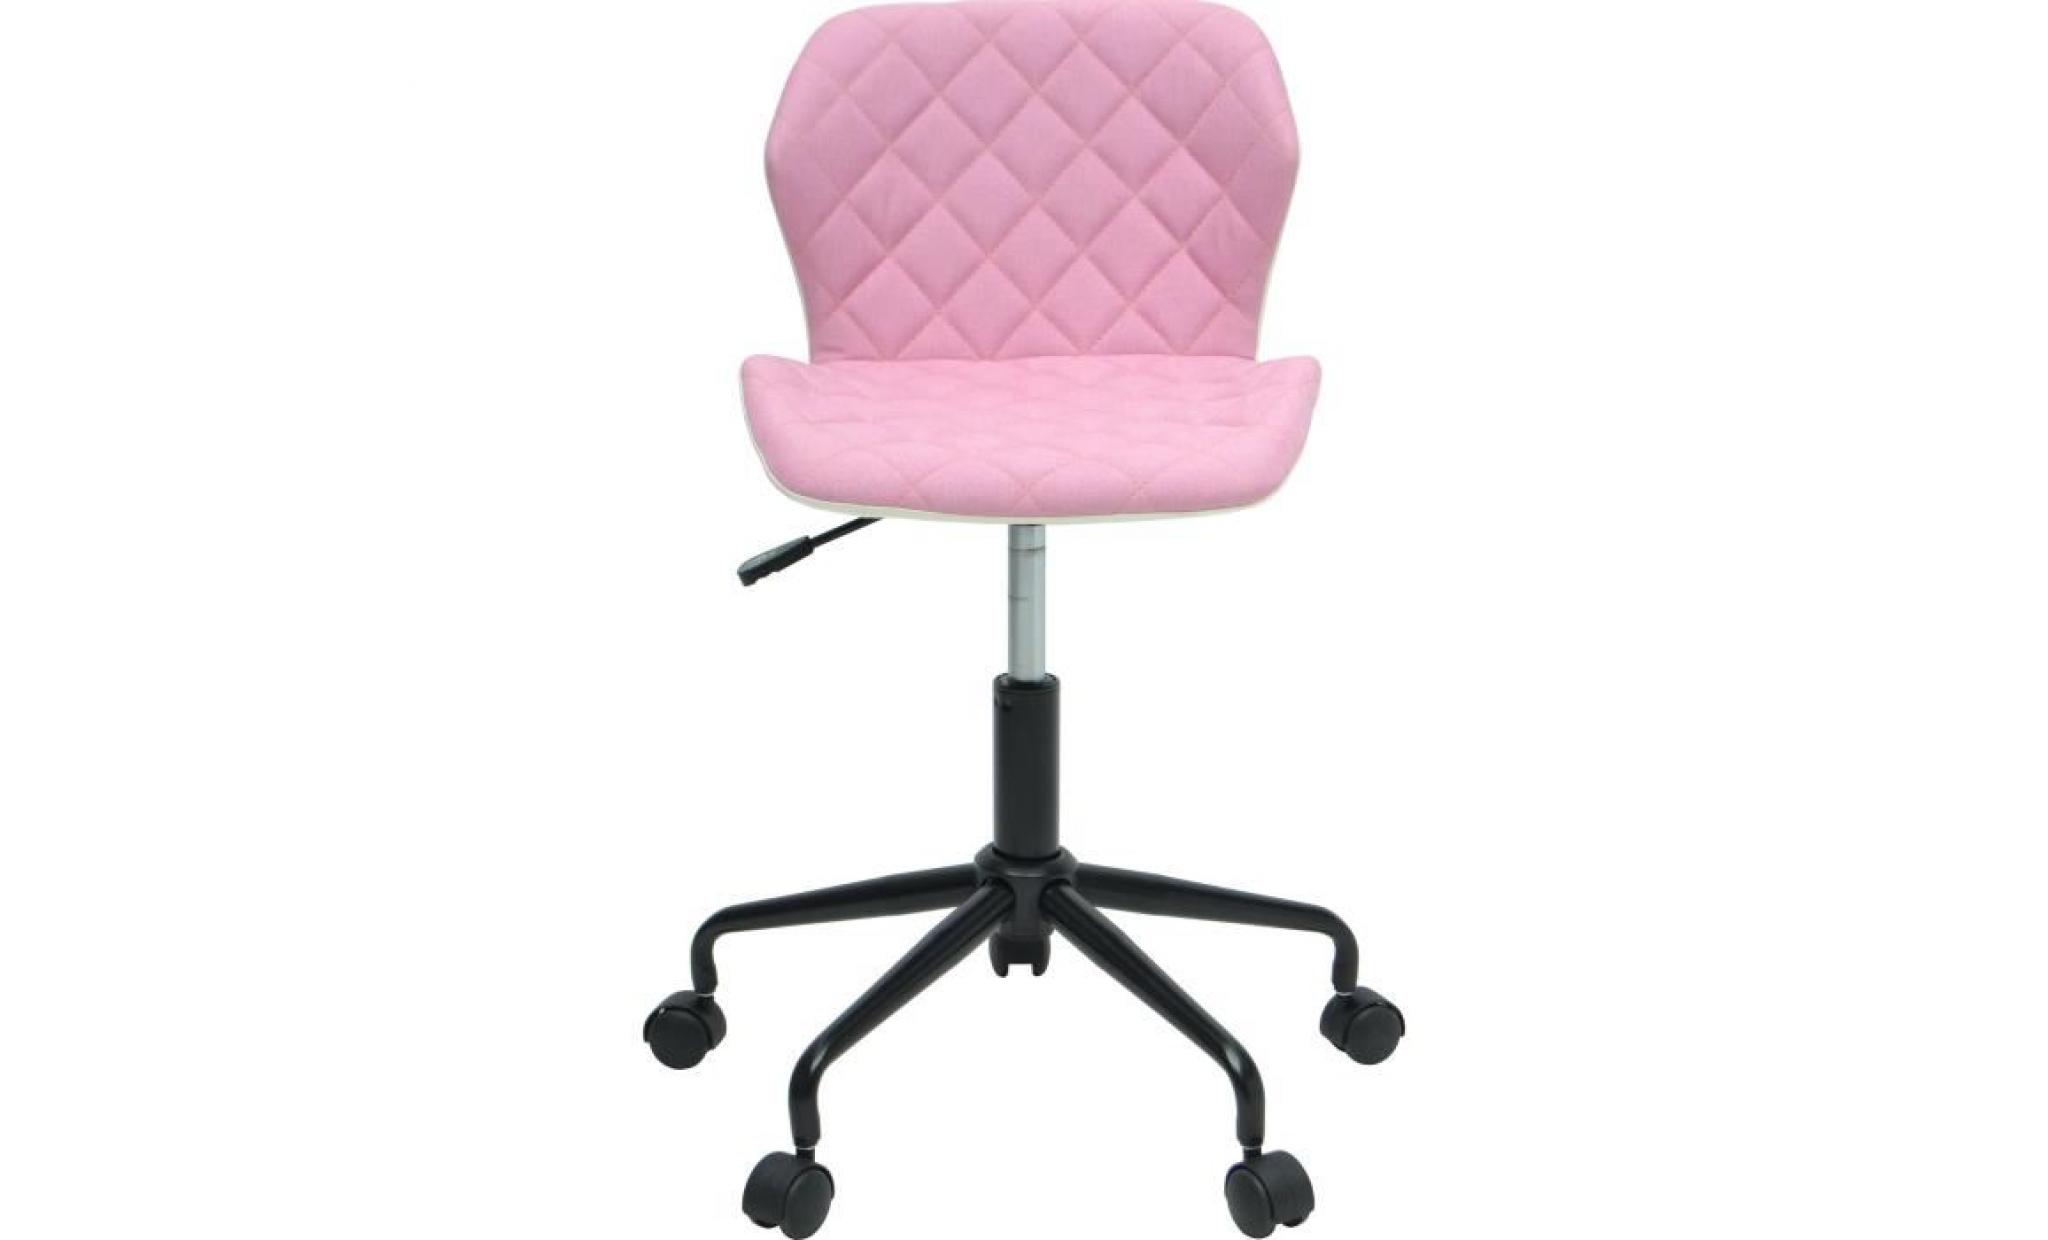 squate chaise de bureau   tissu et simili   rose pâle   style industriel   l 42 x p 35 cm pas cher